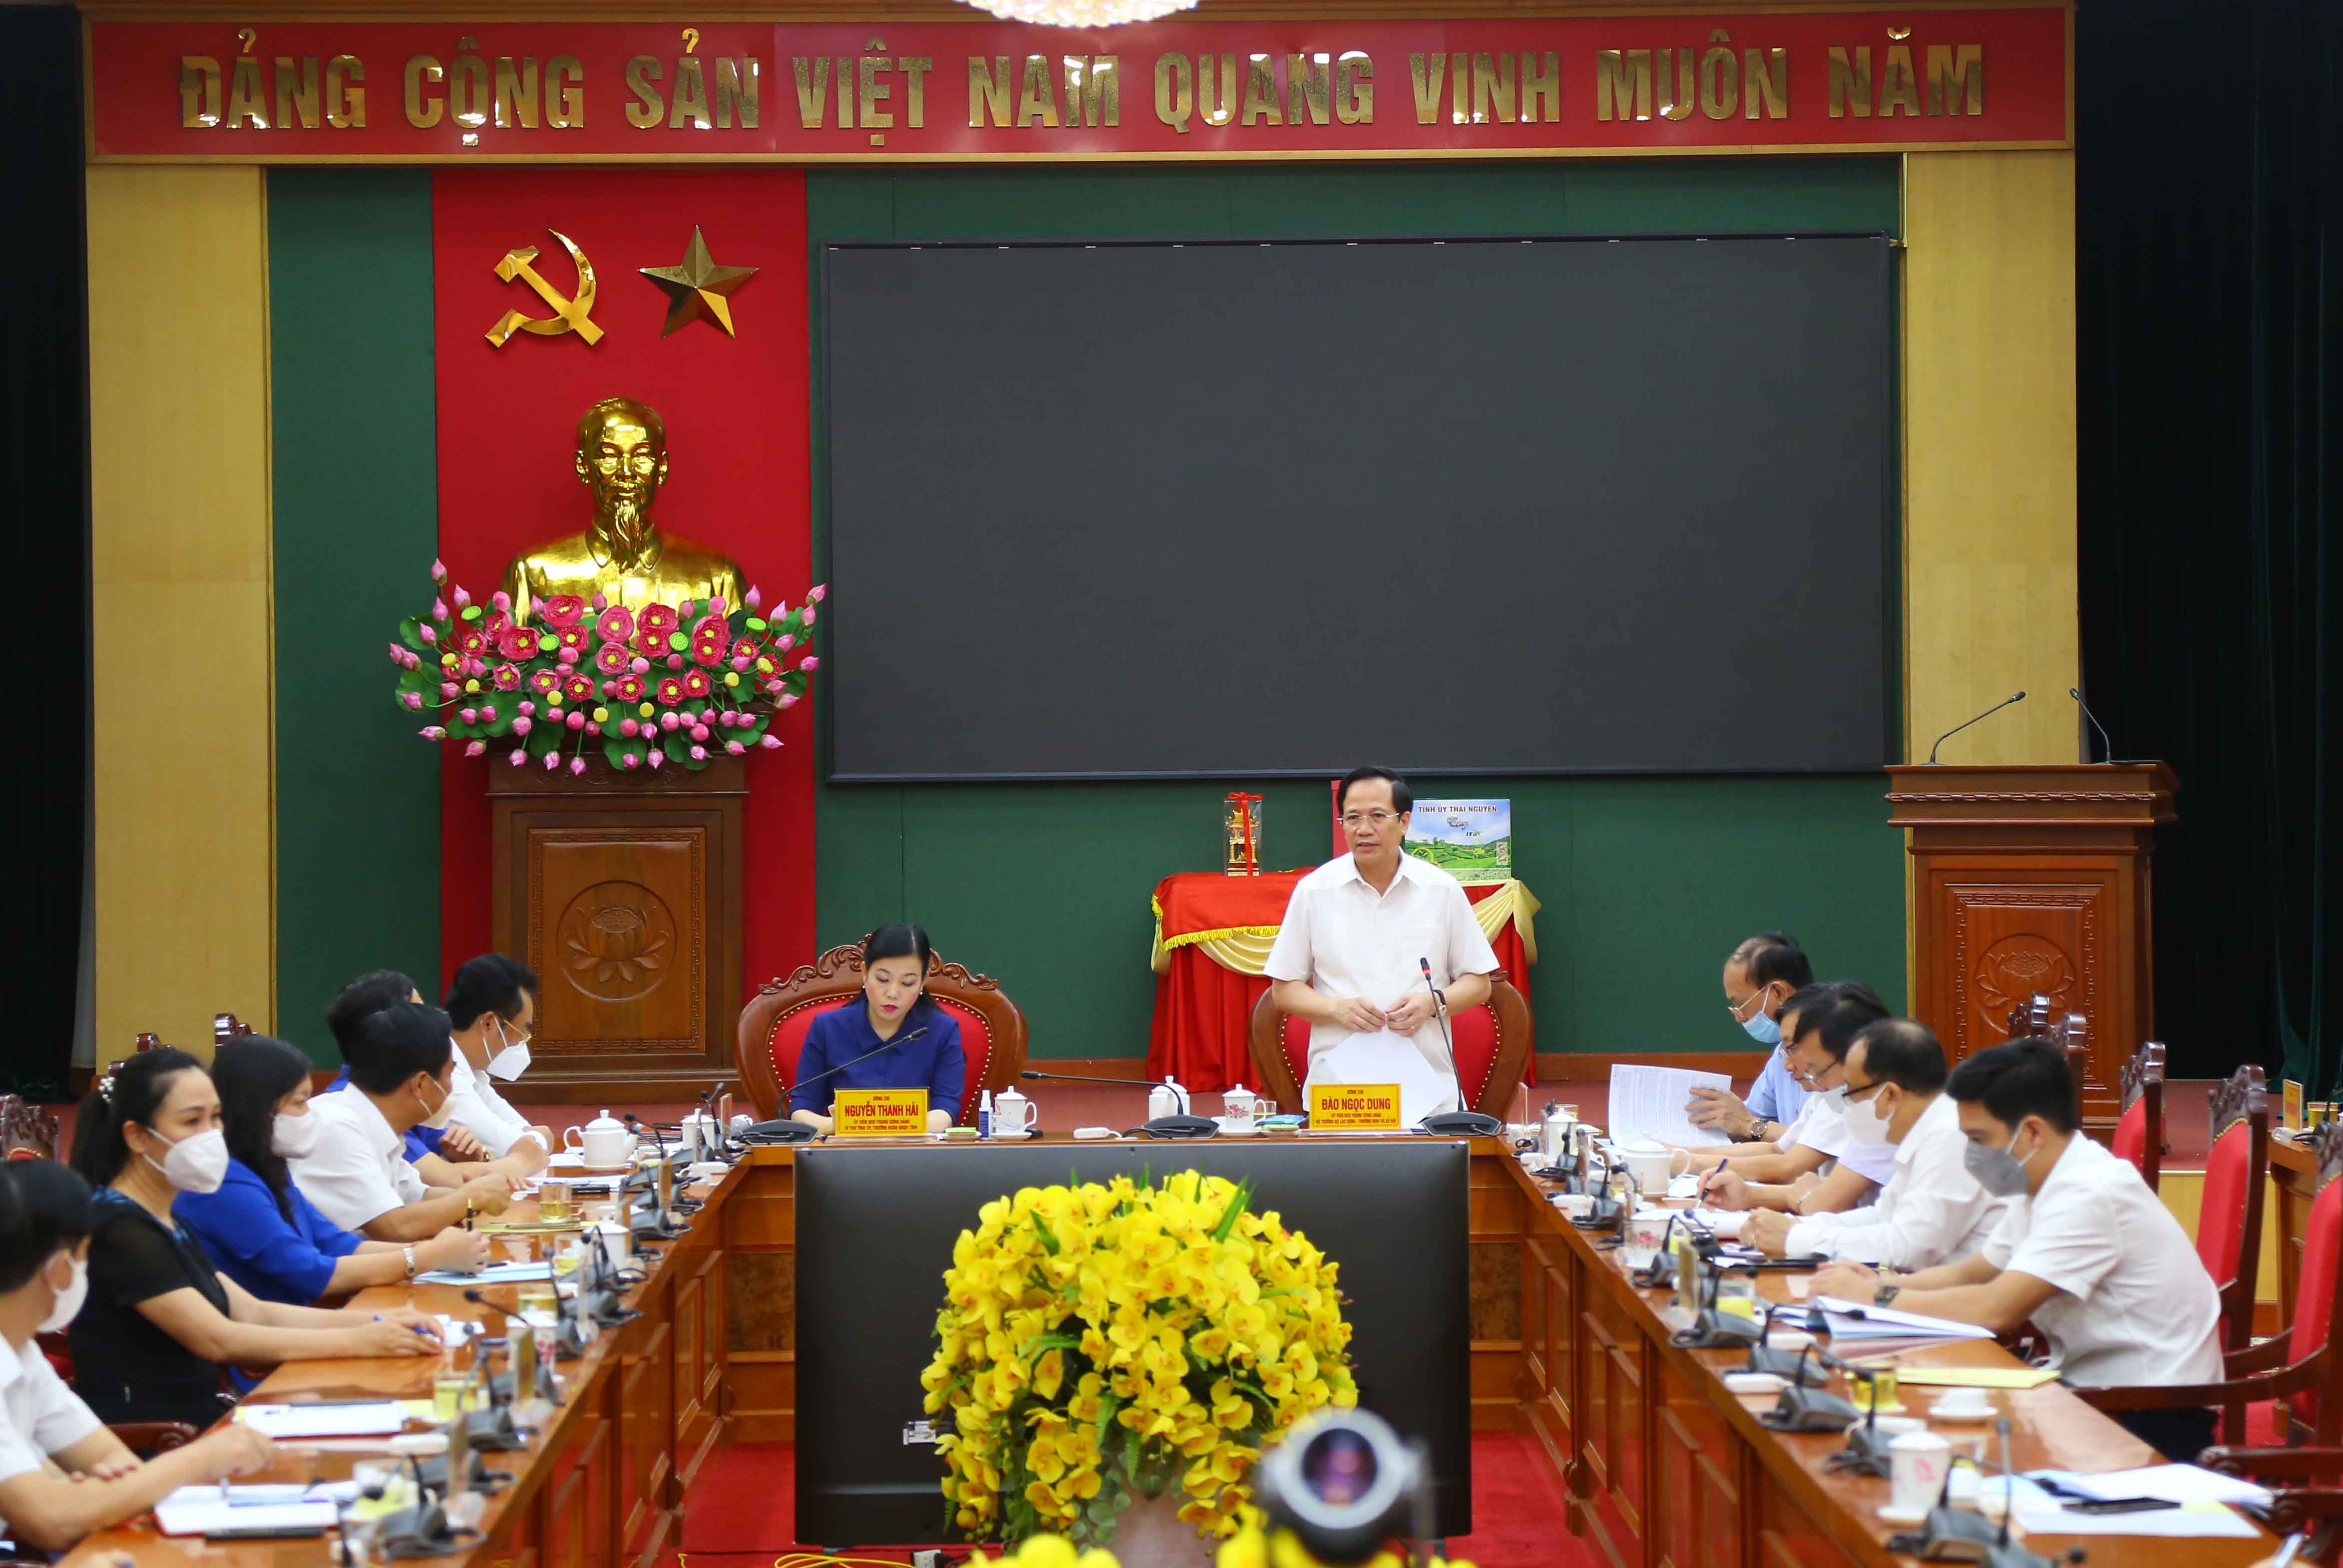 Bộ trưởng Đào Ngọc Dung: Thái Nguyên cần quan tâm và tạo điều kiện tối đa để người lao động và người sử dụng lao động có thể tiếp cận nhanh với chính sách của Nghị quyết 68/NQ-CP